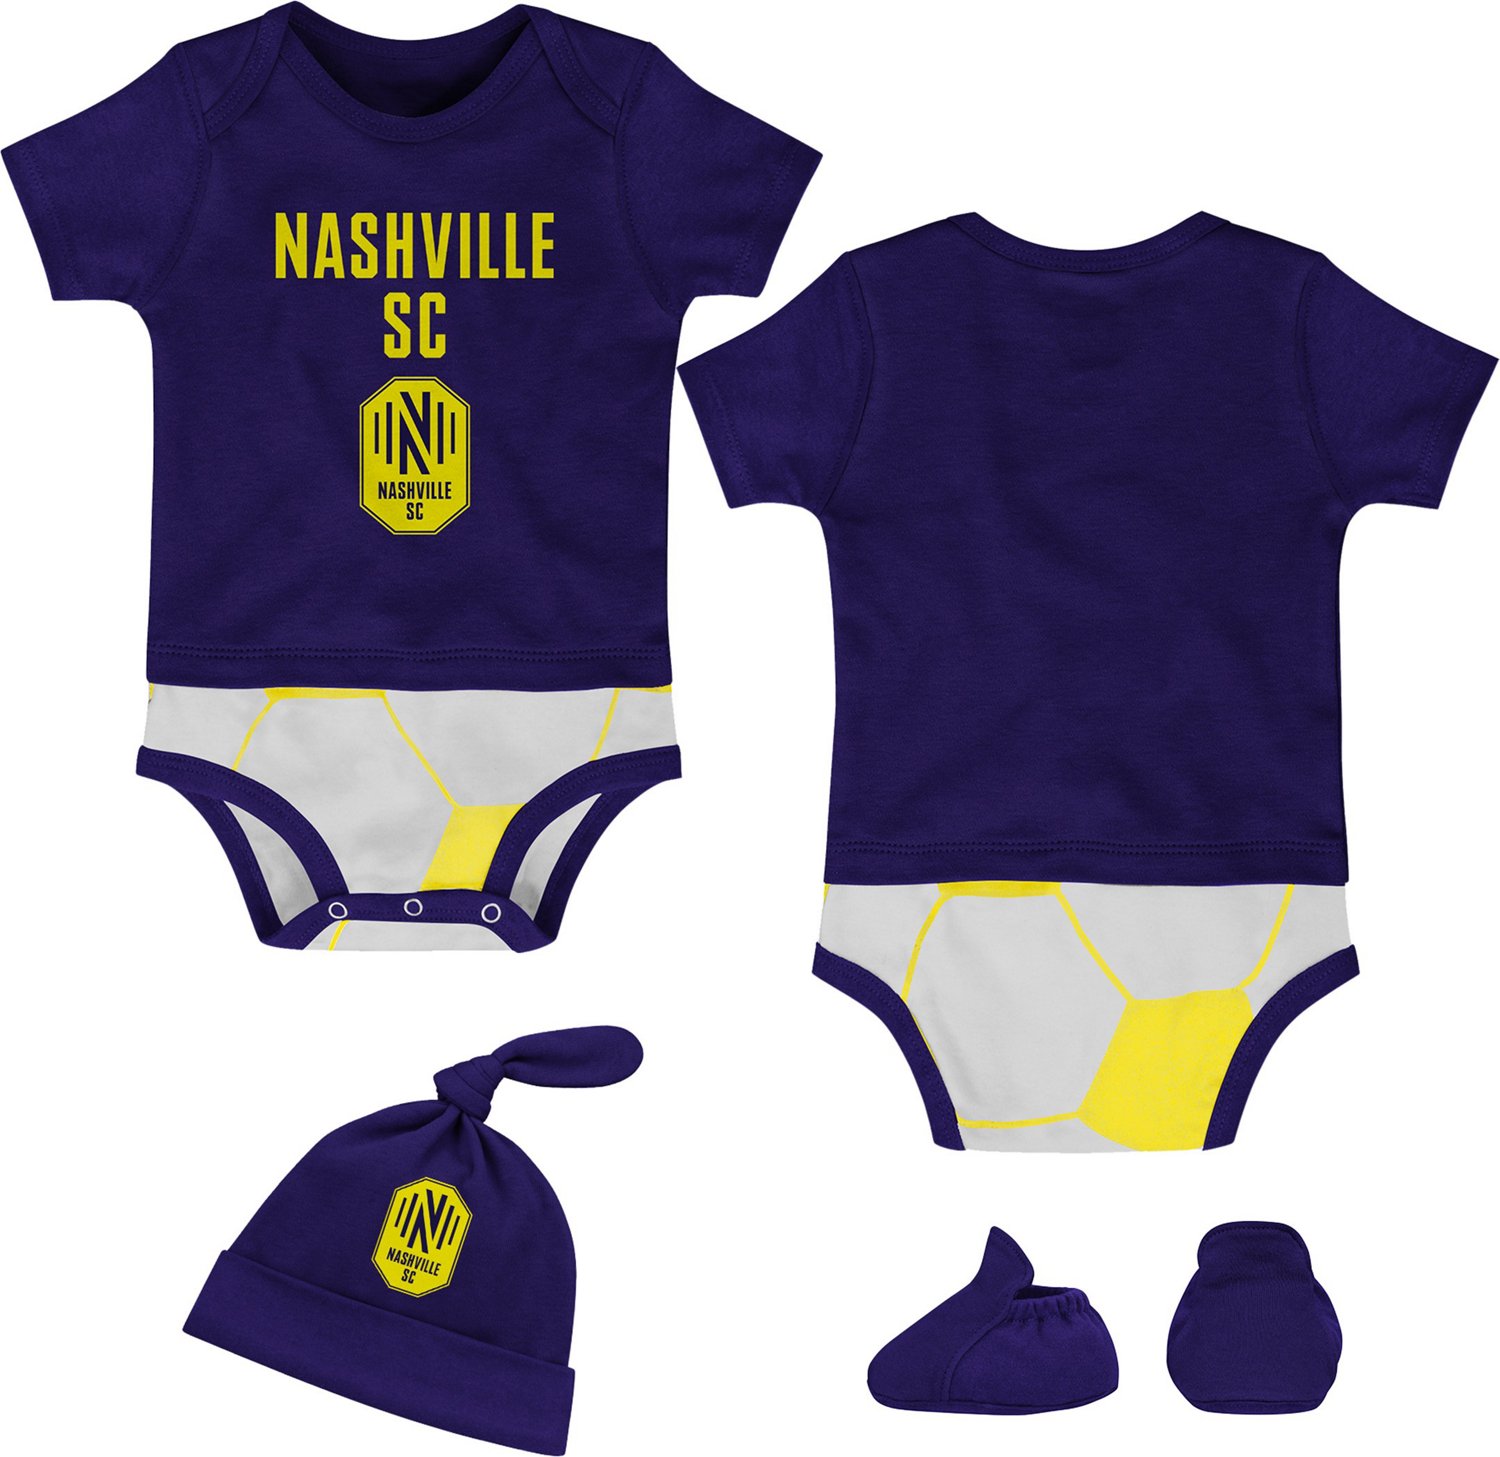 Los Angeles Lakers Babywear Set - Creeper, short & T-Shirt - Newborn